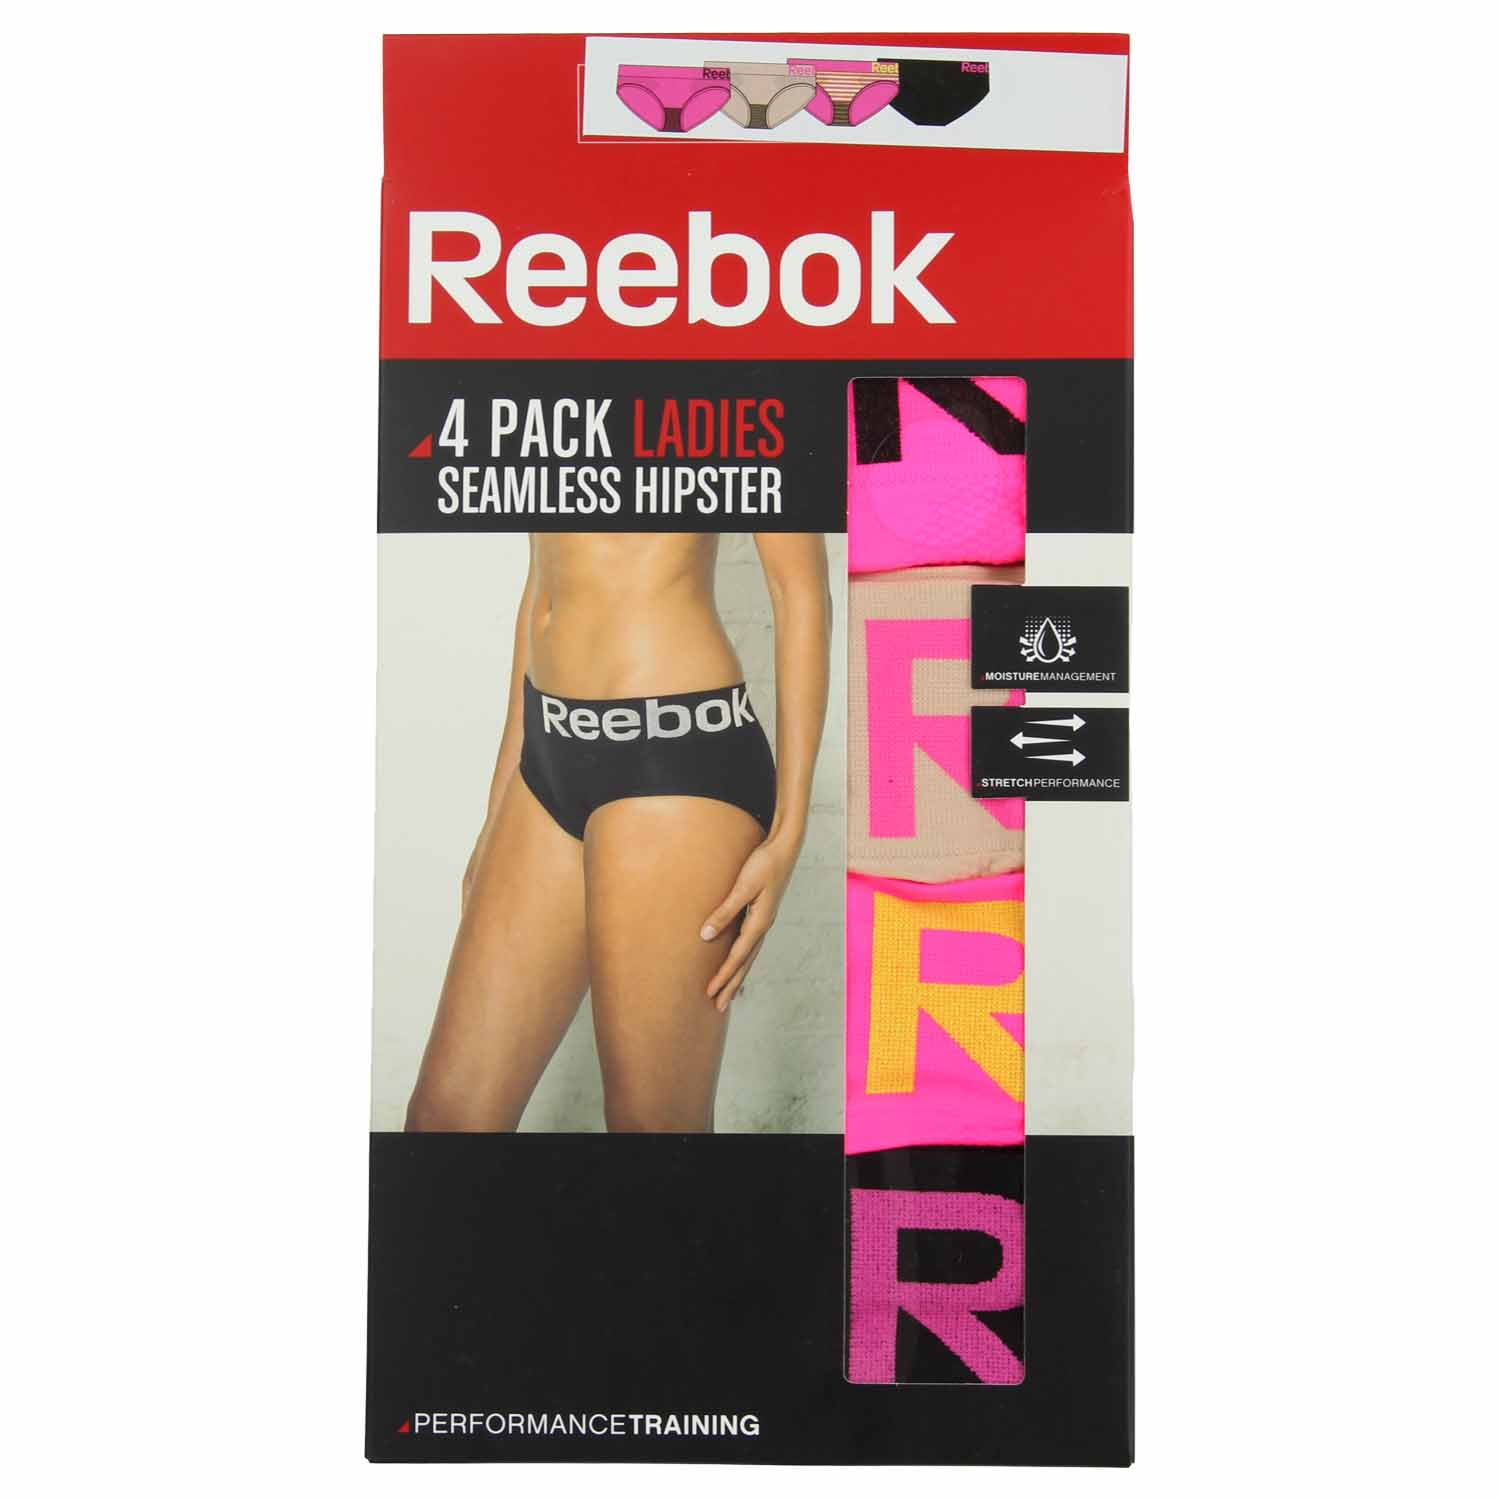 reebok women's underwear